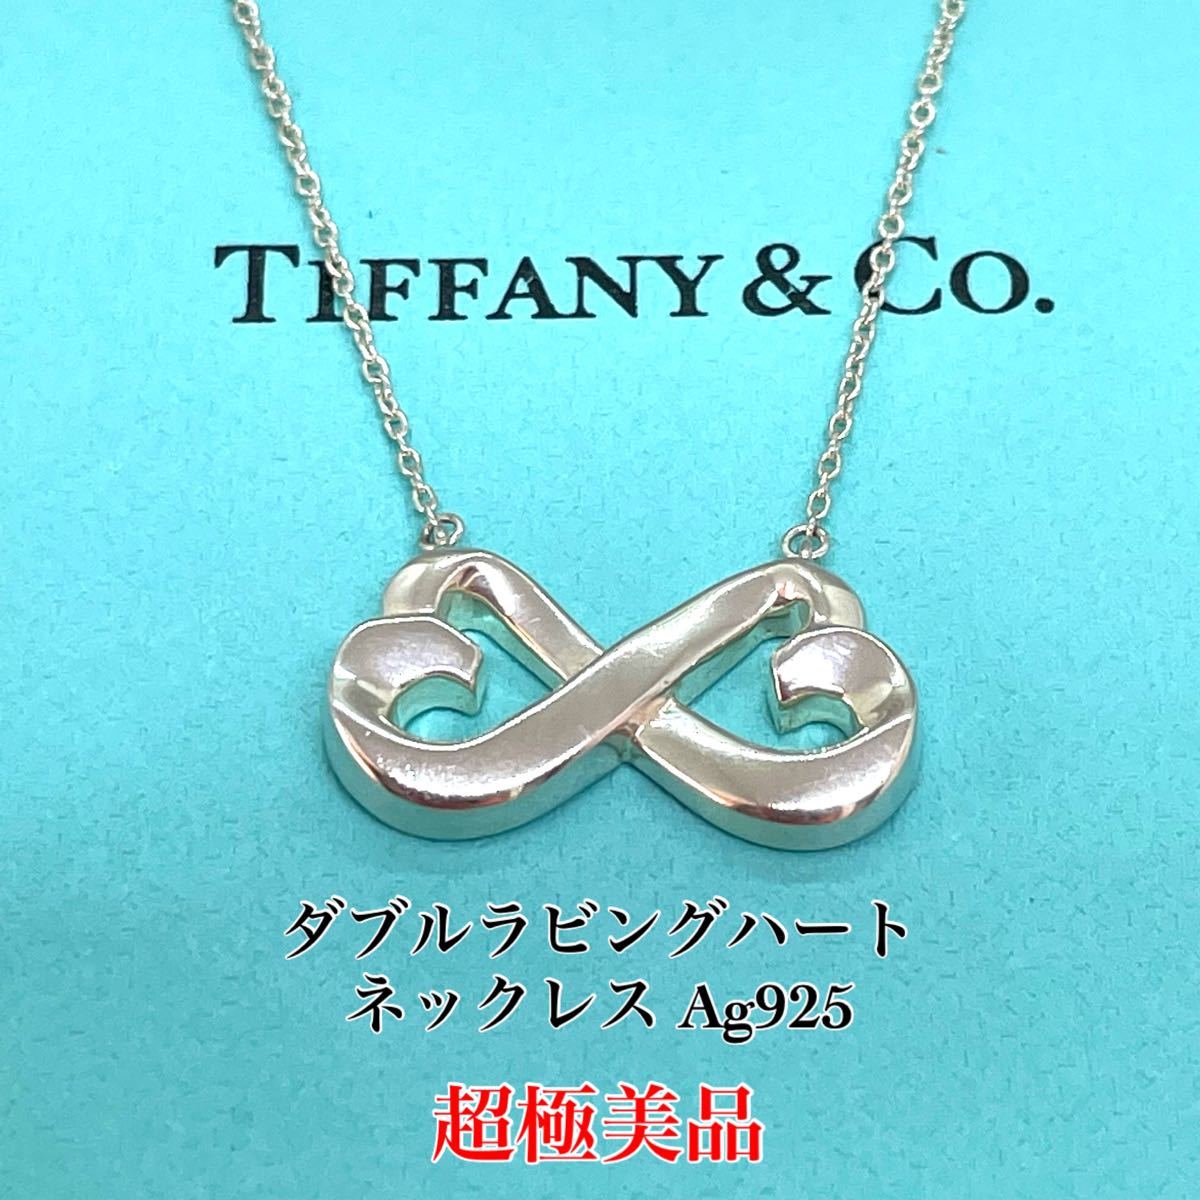 おすすめの人気 TIFFANY&Co. 極美品 Ag925 ネックレス インフィニティ ネックレス